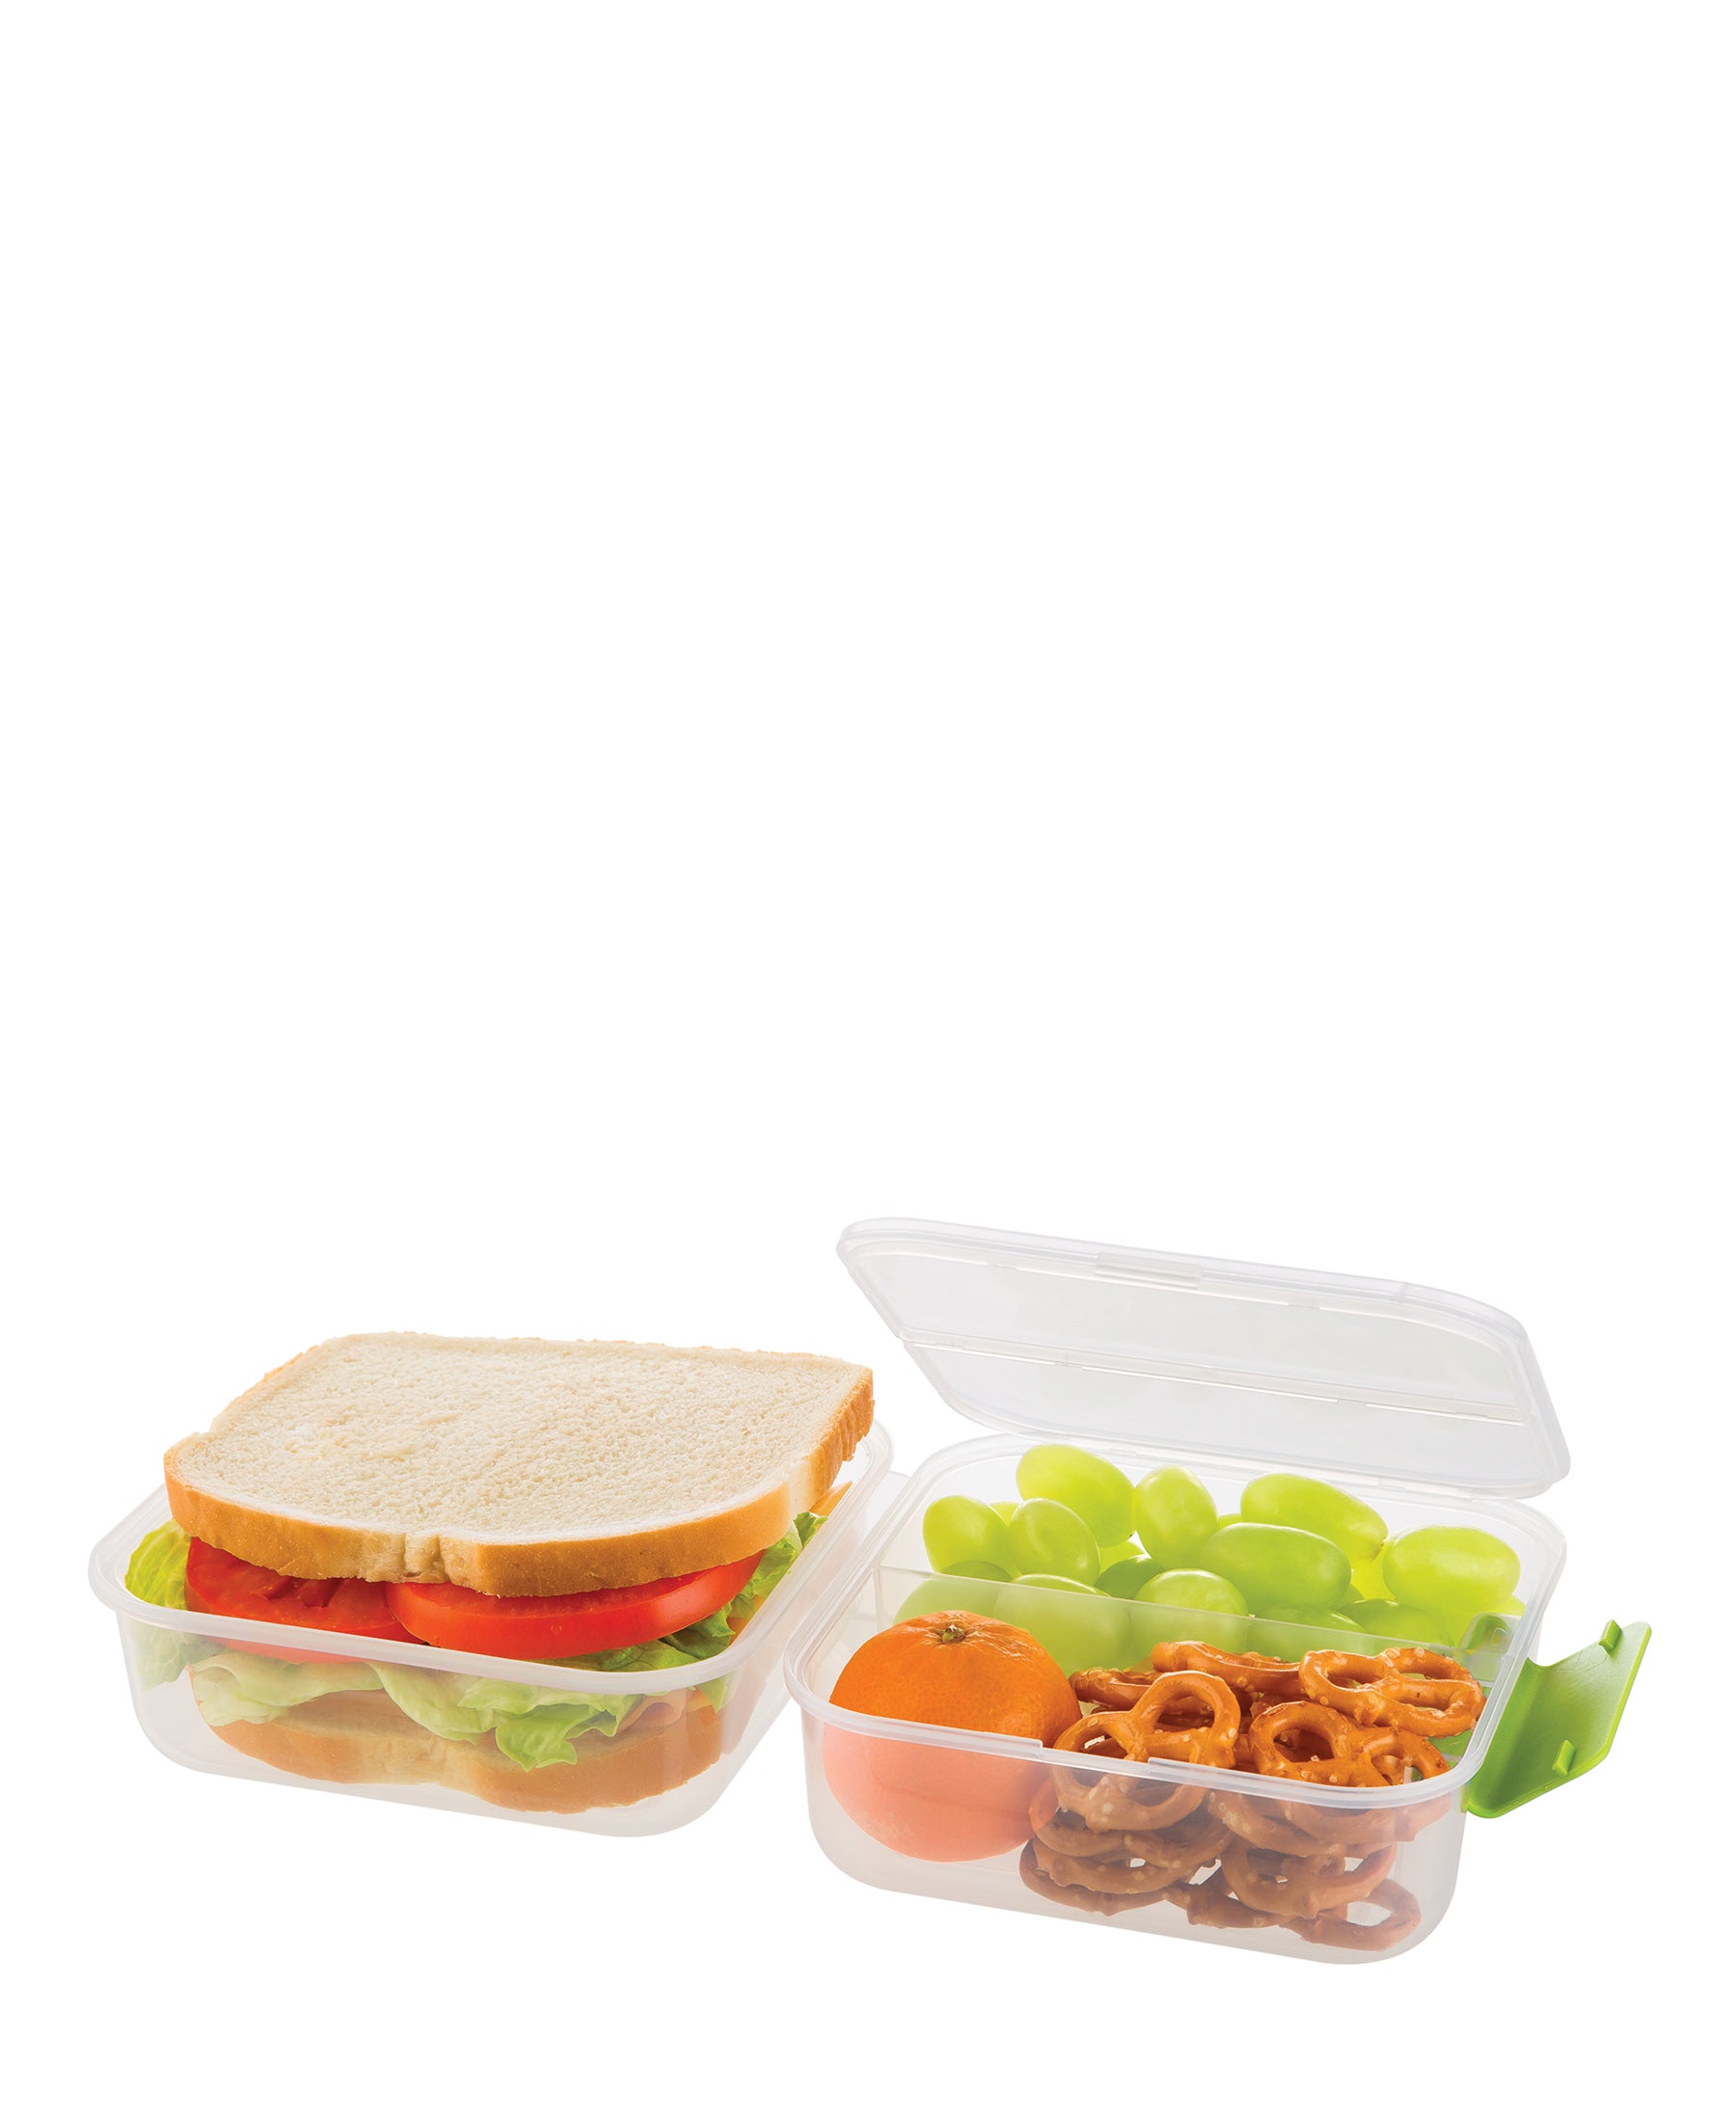 Progressive Lunch To Go Container – The Culinarium